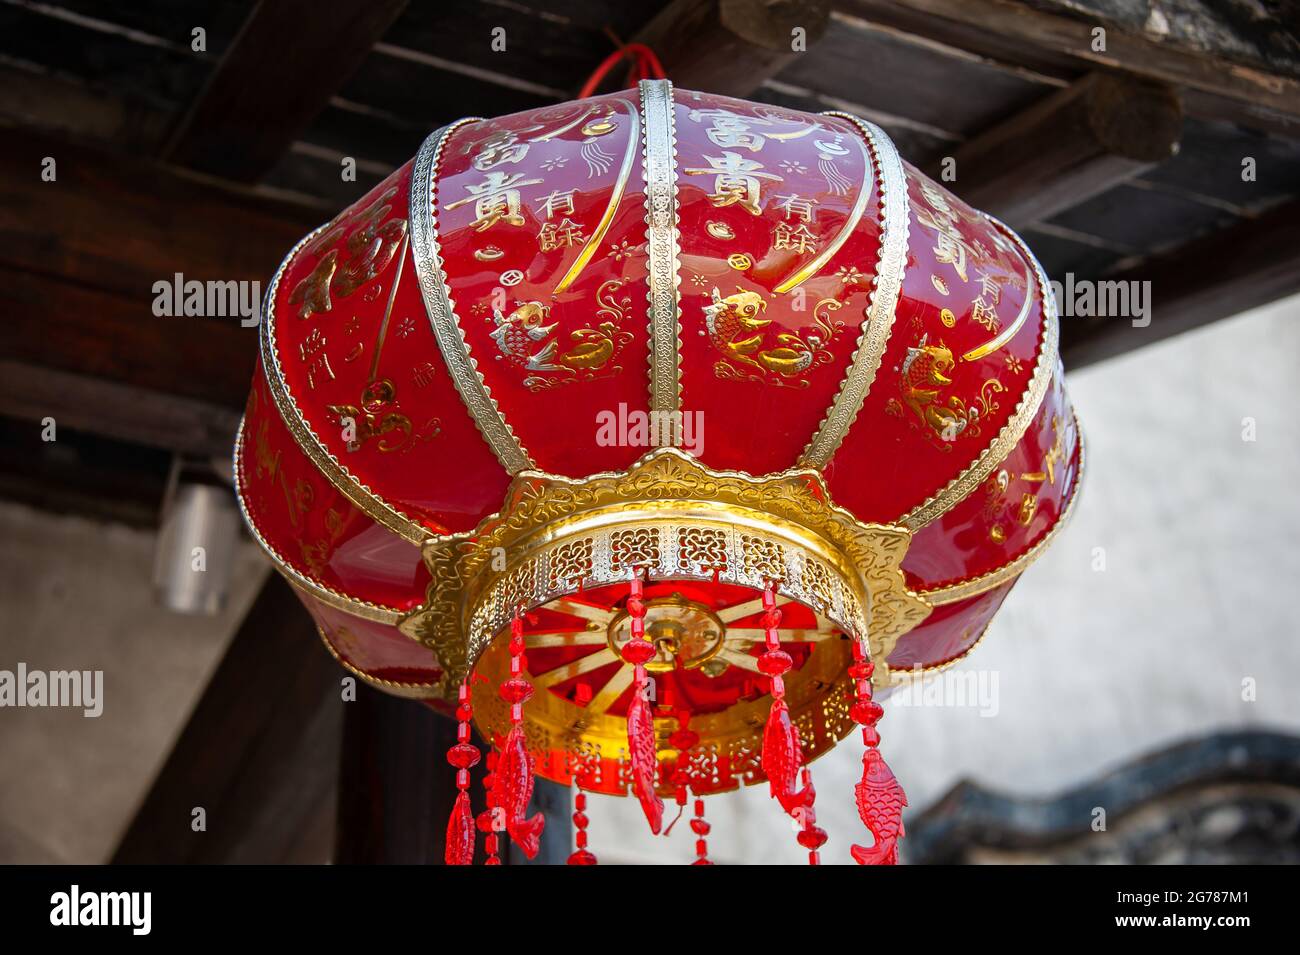 Jiangsu : lanterne chinoise décorative suspendue dans un vieux bâtiment. Ces lanternes rouges sont largement vues dans toute la Chine, célébrant souvent des festivals Banque D'Images